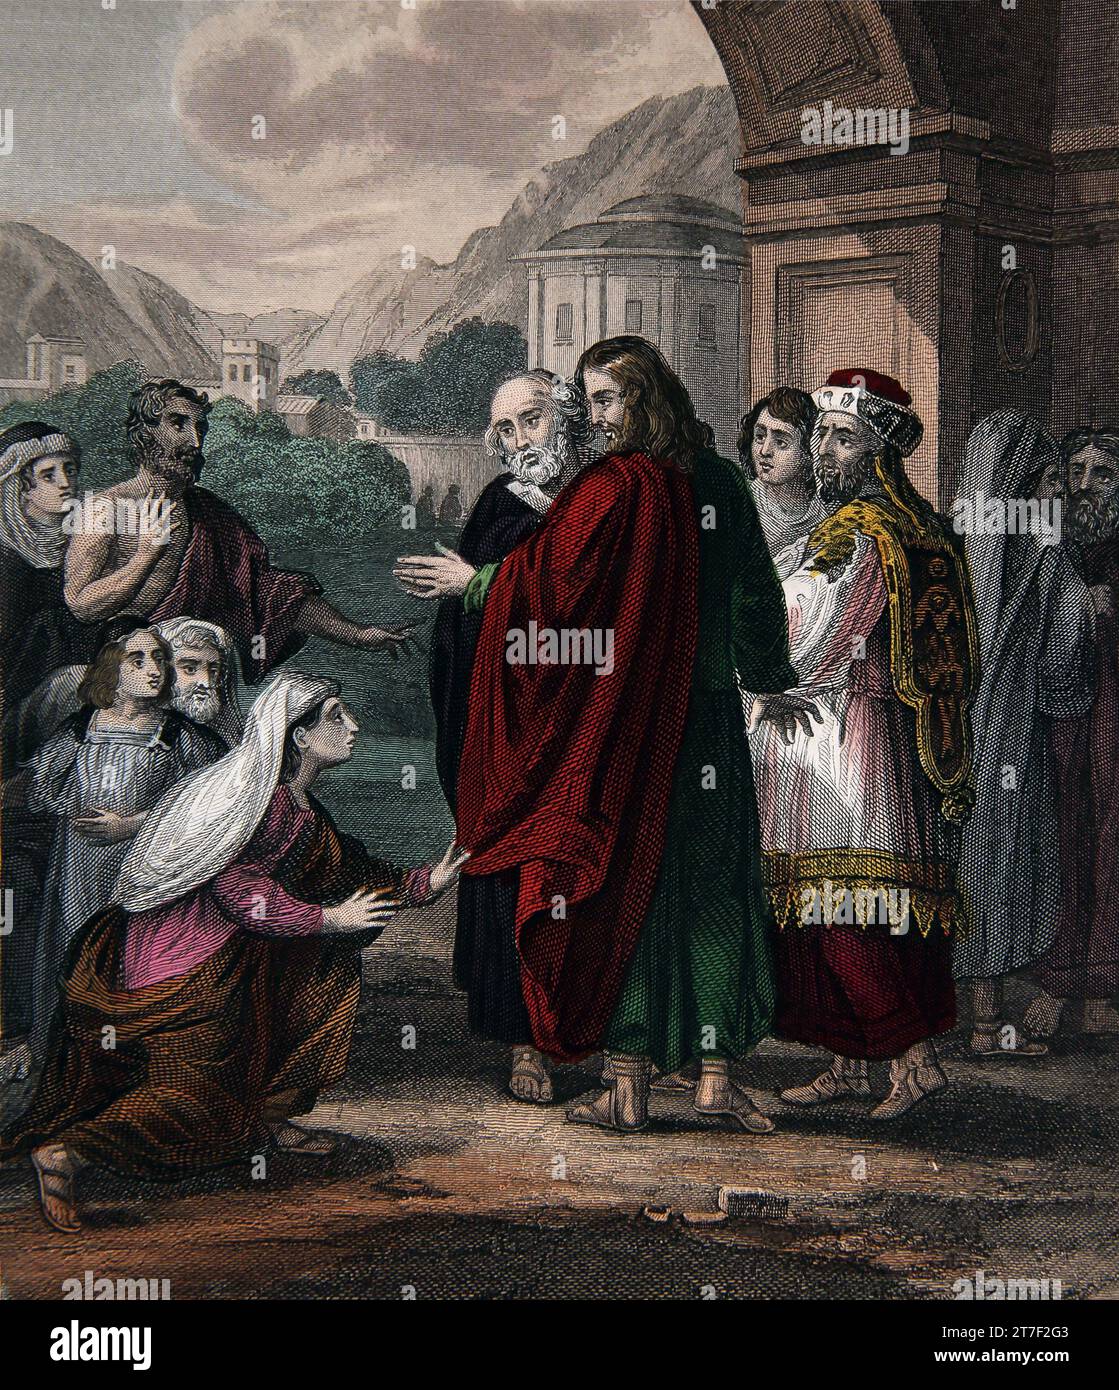 Illustration d'Une femme qui avait saigné et souffert pendant 12 ans est venu derrière Jésus-Christ et a touché le ourlet de son vêtement croyant Th Banque D'Images